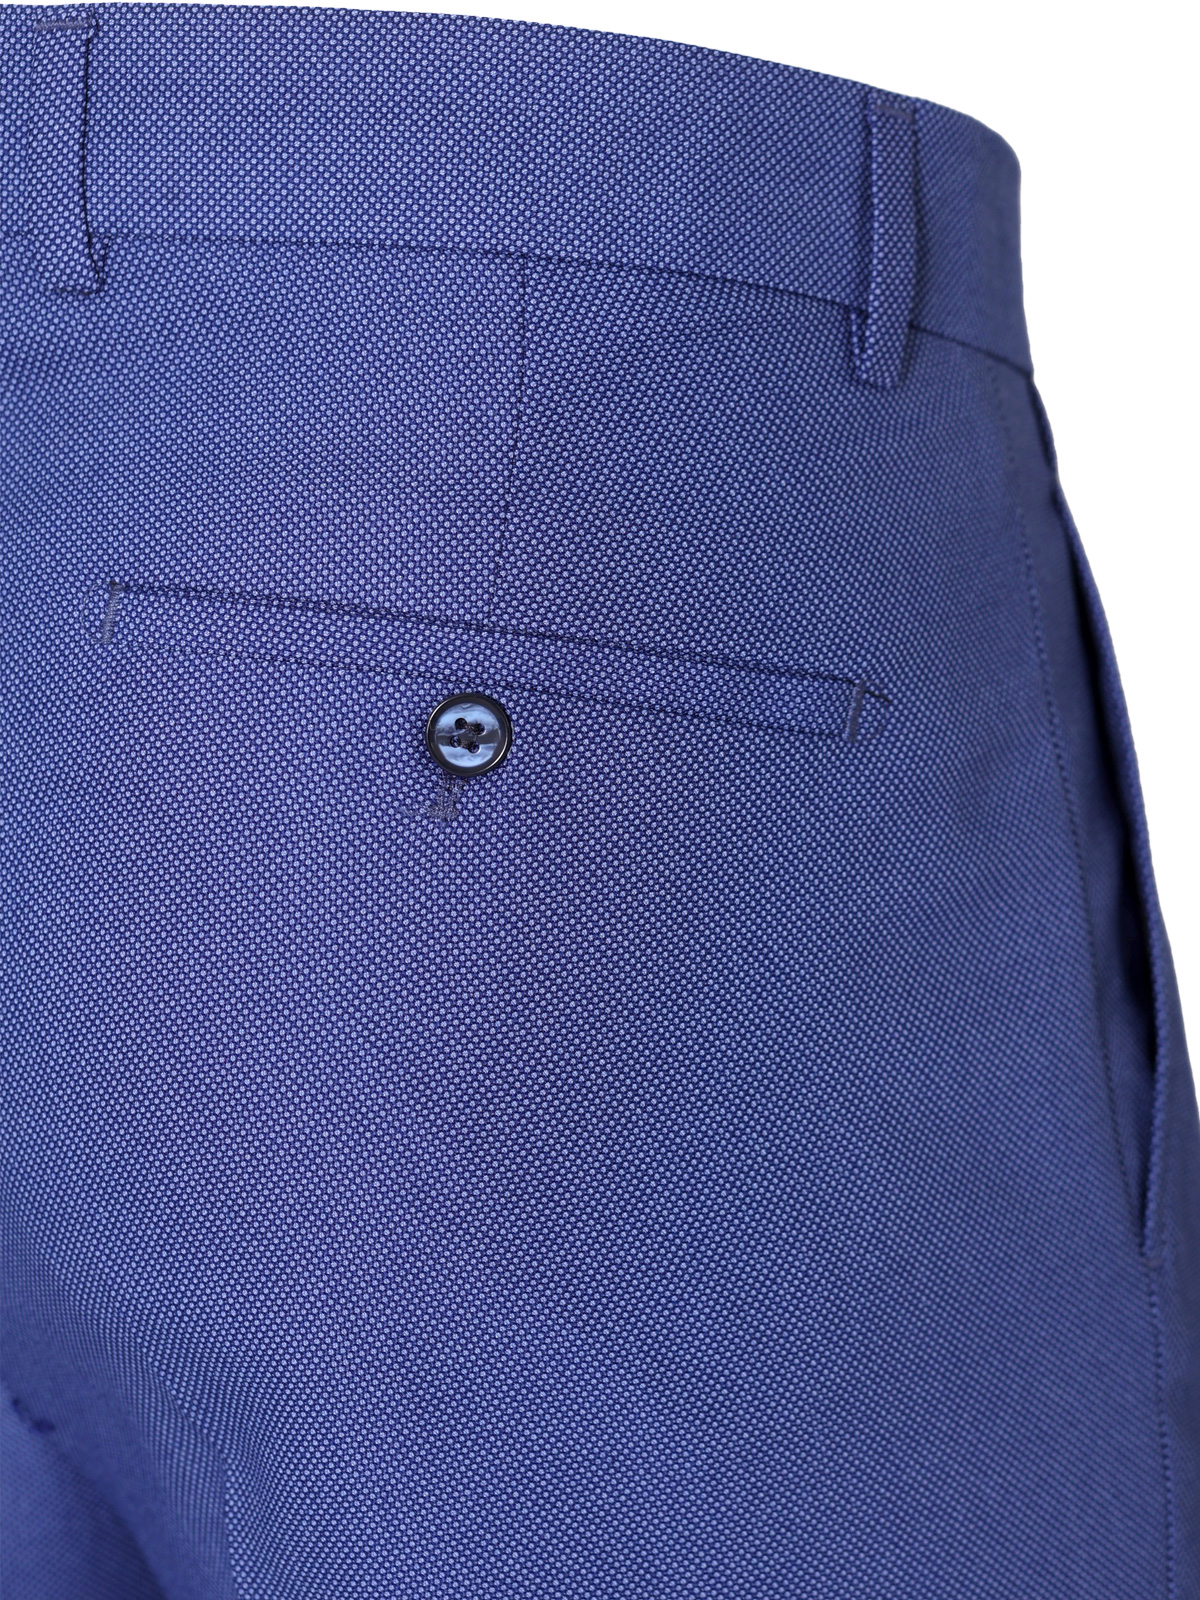 Pantaloni pentru bărbați în albastru cla - 63341 € 62.99 img3